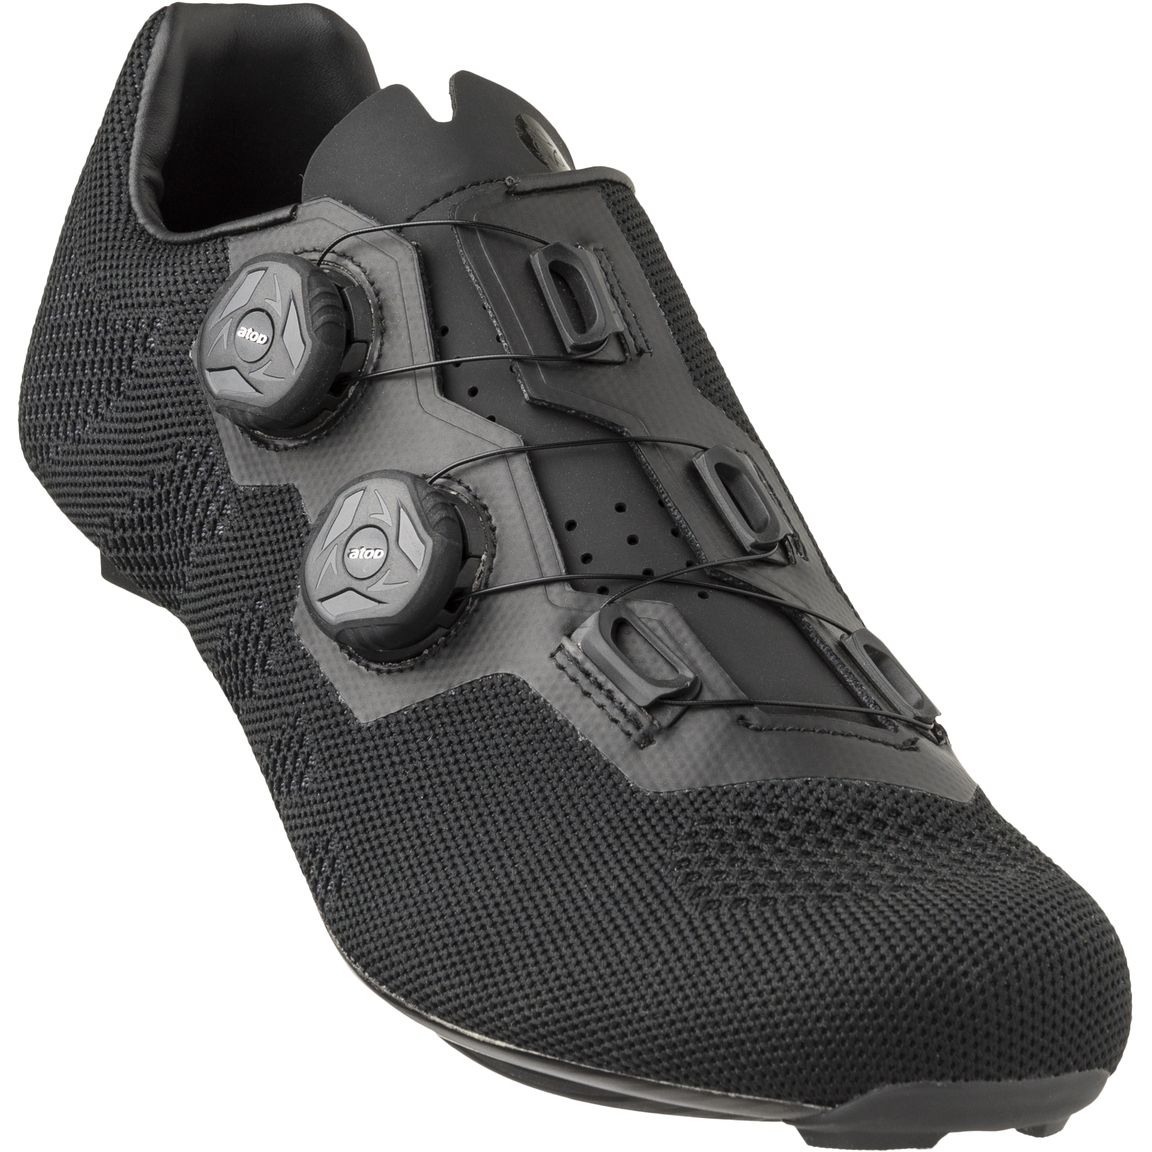 Produktbild von AGU Essential R910 Road Schuhe - schwarz